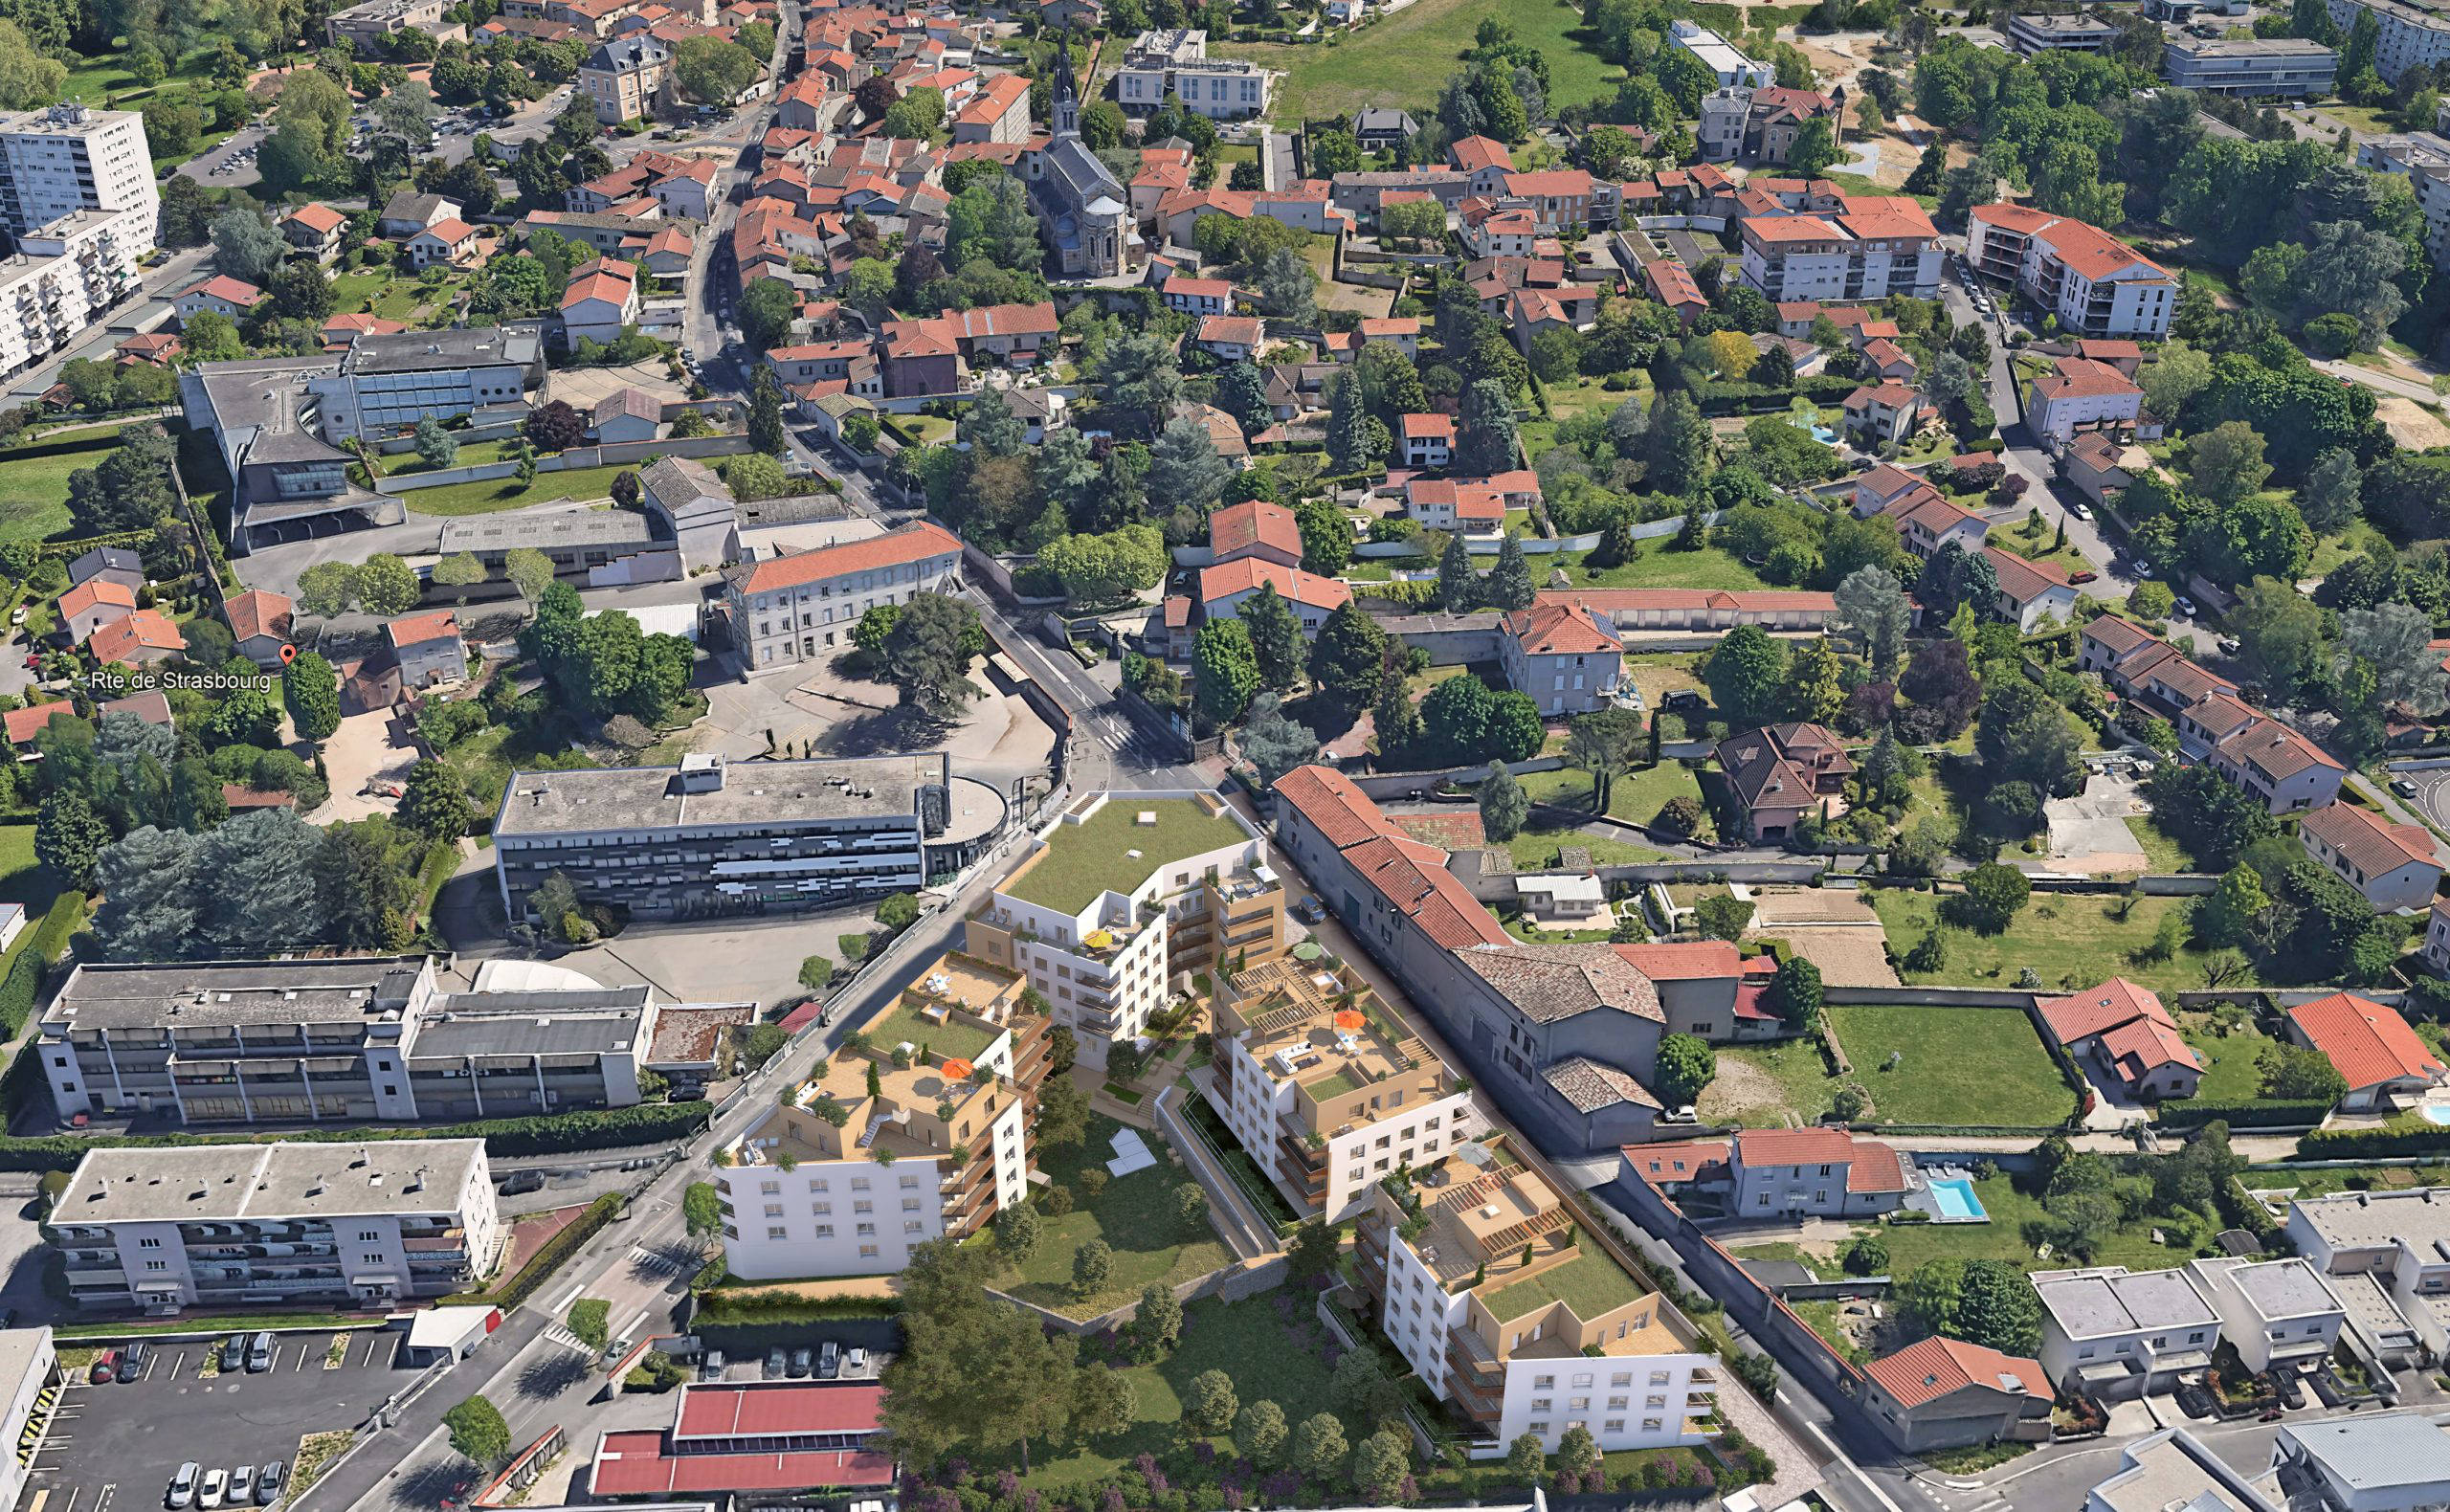 Programme immobilier neuf Rillieux-la-Pape à moins de 2 kilomètres de la gare TER